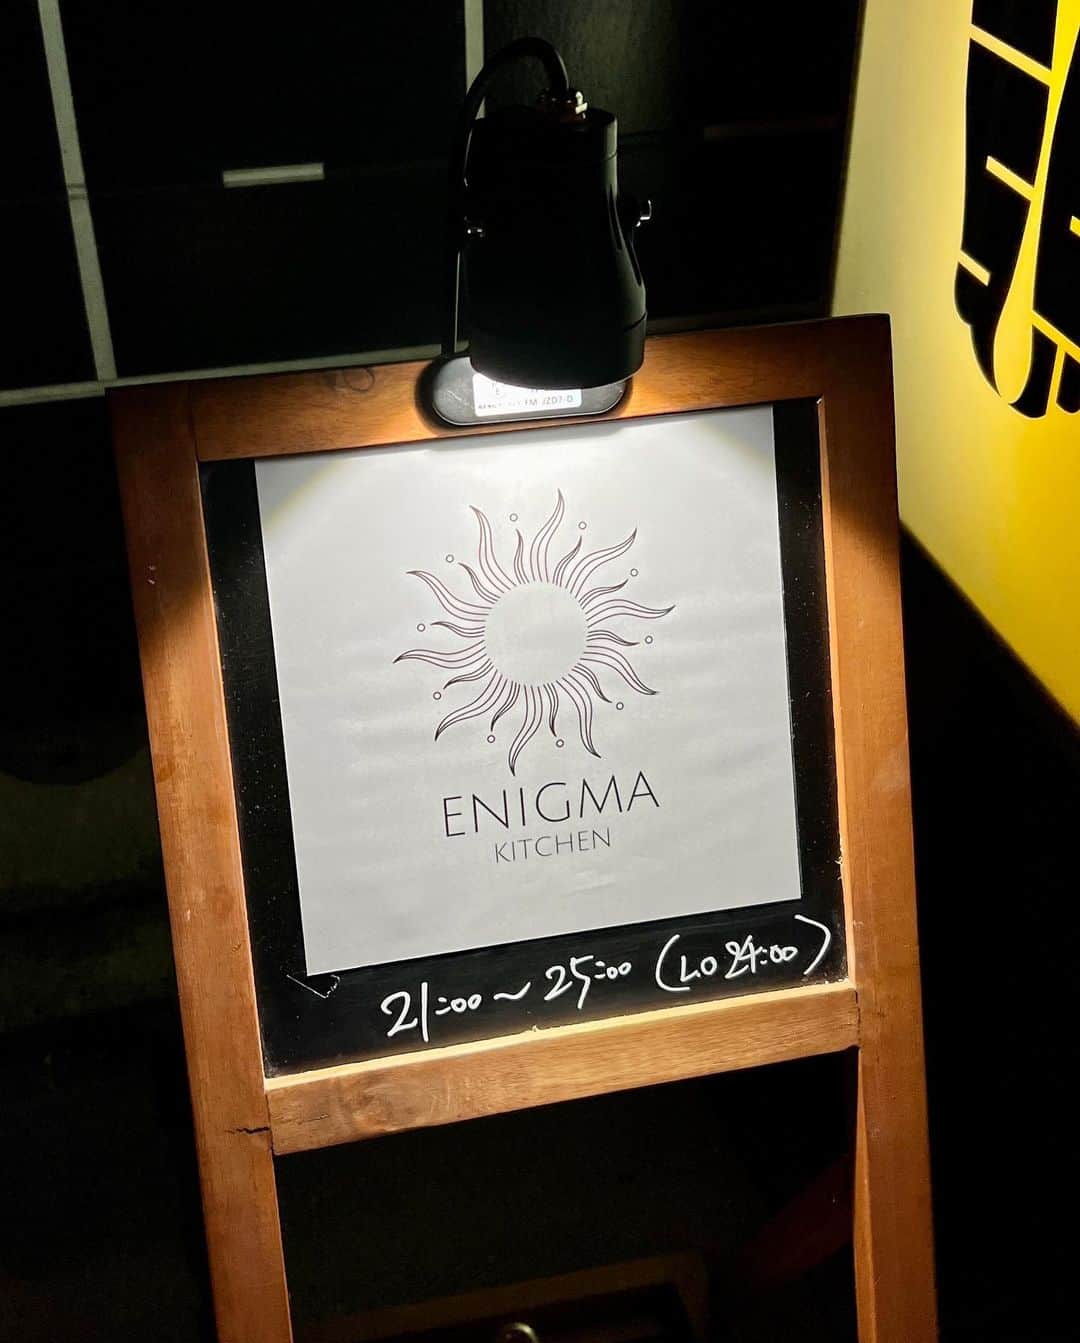 福岡グルメ 福岡ランチ「デビログ」さんのインスタグラム写真 - (福岡グルメ 福岡ランチ「デビログ」Instagram)「平尾にある『炭火焼肉バル AGITO HIRAO』の新しい業態『エニグマキッチン』に行ってきたよ。 場所は『AGITO HIRAO』内で、洋風肉料理をメインにしたメニューを食べることができる。 『エニグマキッチン』の営業時間は日曜日の16:00～23:00 LOと、火曜〜土曜の21:00〜0:00 LOだから、平日の21:00からは『AGITO HIRAO』と『エニグマキッチン』の両方のメニューを食べることができるのだ。  忙しくなければ、ボリューム控えめの小サイズにも対応してくれるらしい。  「牛ハラミのステックフリット」2189円 (今回は小サイズ1,419円) 食感の良い牛ハラミとフライドポテトの盛り合わせ。自家製エスカルゴバターとポメリーソースの相性が素晴らしい。  「牛挽肉のアランチーニ」539円は、シチリア名物のライスコロッケらしい。カリッとした衣と中に入っているリゾット、チーズ、挽肉のバランスが最高。これはオススメ！  「TOKYO X のヒレカツ ひんぎゃの塩で」2,189円(今回は小サイズ1,419円) なかなか福岡では手に入りにくい「TOKYO X」のヒレカツは柔らかくて美味いよ。伊豆諸島最南端の青ヶ島産「ひんぎゃの塩」が合う。 入荷されない時もあるらしいので、ある時は是非食べてほしい。  「サルシッチャ風牛タンとフレッシュトマトのペペロンチーノ」1,529円 (今回は小サイズ1,089円) 味付けした牛タンの挽き肉をサルシッチャ(生ソーセージ)に見立てたオリジナルパスタらしい。肉の旨味とニンニクの香ばしさがクセになるよ。  「伊万里牛クリミのカルパッチョ」1,969円（今回は小サイズ1,309円) 伊万里牛クリミは柔らかくて旨味があるよ。ソースは特製バルサミコソースで、カシスリキュールと醤油が隠し味らしい。  「スカーリアさんのアンチョビキャベツ」429円は、ミシュラン３ツ星レストランでも使用される上質なアンチョビを使用したもの。 ニンニクとアンチョビで酒がすすむ一品やね。  「自家製とろける生チョコ」429円 生クリームをたっぷり使用した生チョコは、口の中でとろける！  ▶エニグマキッチン @enigma_kitchen 福岡市中央区平尾2-15-1 (炭火焼肉バル AGITO HIRAO内) 092-707-2989 (炭火焼肉バル AGITO HIRAO) 日曜 16:00～23:00 LO 火曜〜土曜 21:00〜0:00 LO 定休日：月曜＋不定休  #Fukuoka Gourmet ``Enigma Kitchen'' is a new business form of ``Charcoal-grilled Yakiniku Bar AGITO HIRAO'' where you can enjoy a menu centered on Western-style meat dishes.  #후쿠오카 '에니그마 키친'은 '숯불 불고기 발 AGITO HIRAO'의 신업태로 서양식 고기 요리를 메인으로 한 메뉴를 먹을 수 있다.  #福岡美食 「Enigma Kitchen」是「炭烤烤肉吧AGITO HIRAO」的新業態，提供以西式肉類菜餚為主的菜單。  #福岡グルメ #福岡ディナー #平尾グルメ #平尾ディナー #エニグマキッチン #enigmakitchen #アギト新業態」11月11日 7時53分 - devi_takahashi